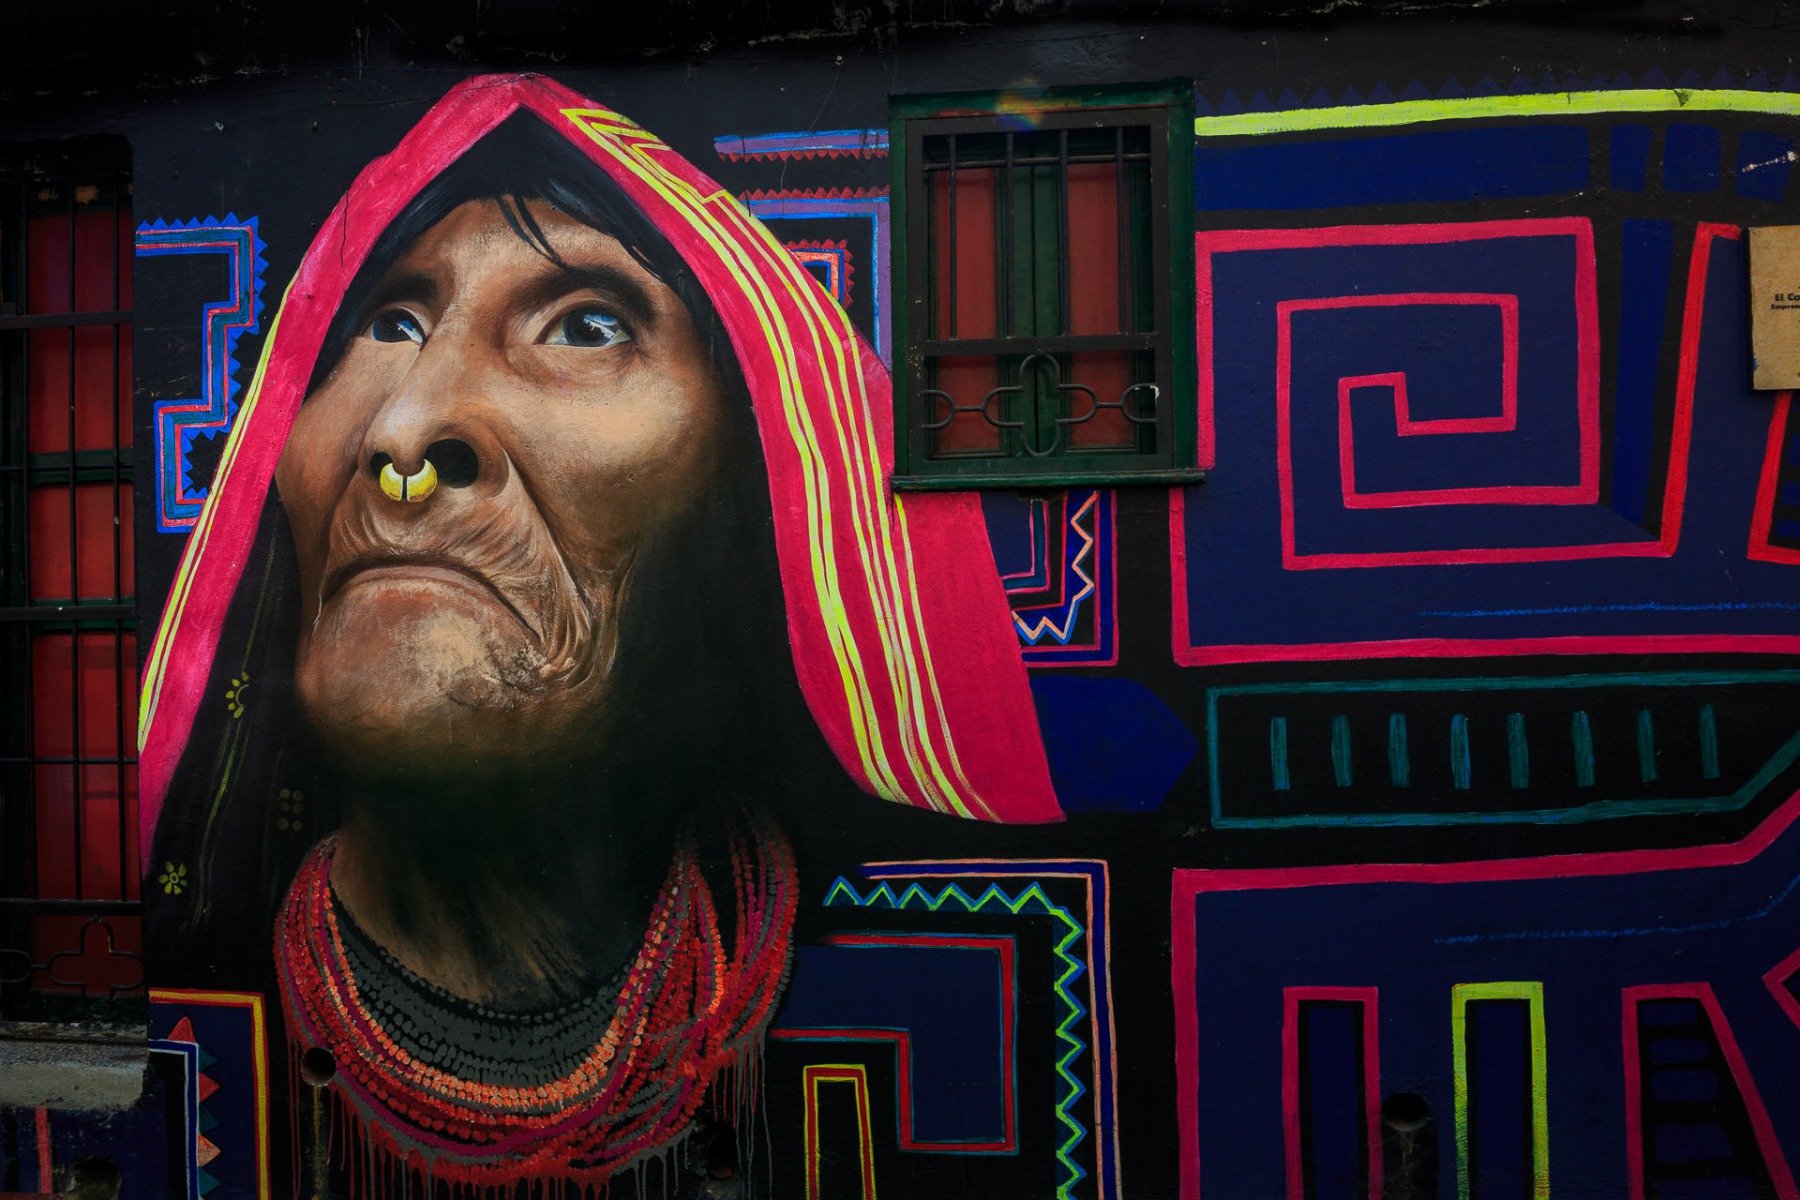 Bogota and its Street Art